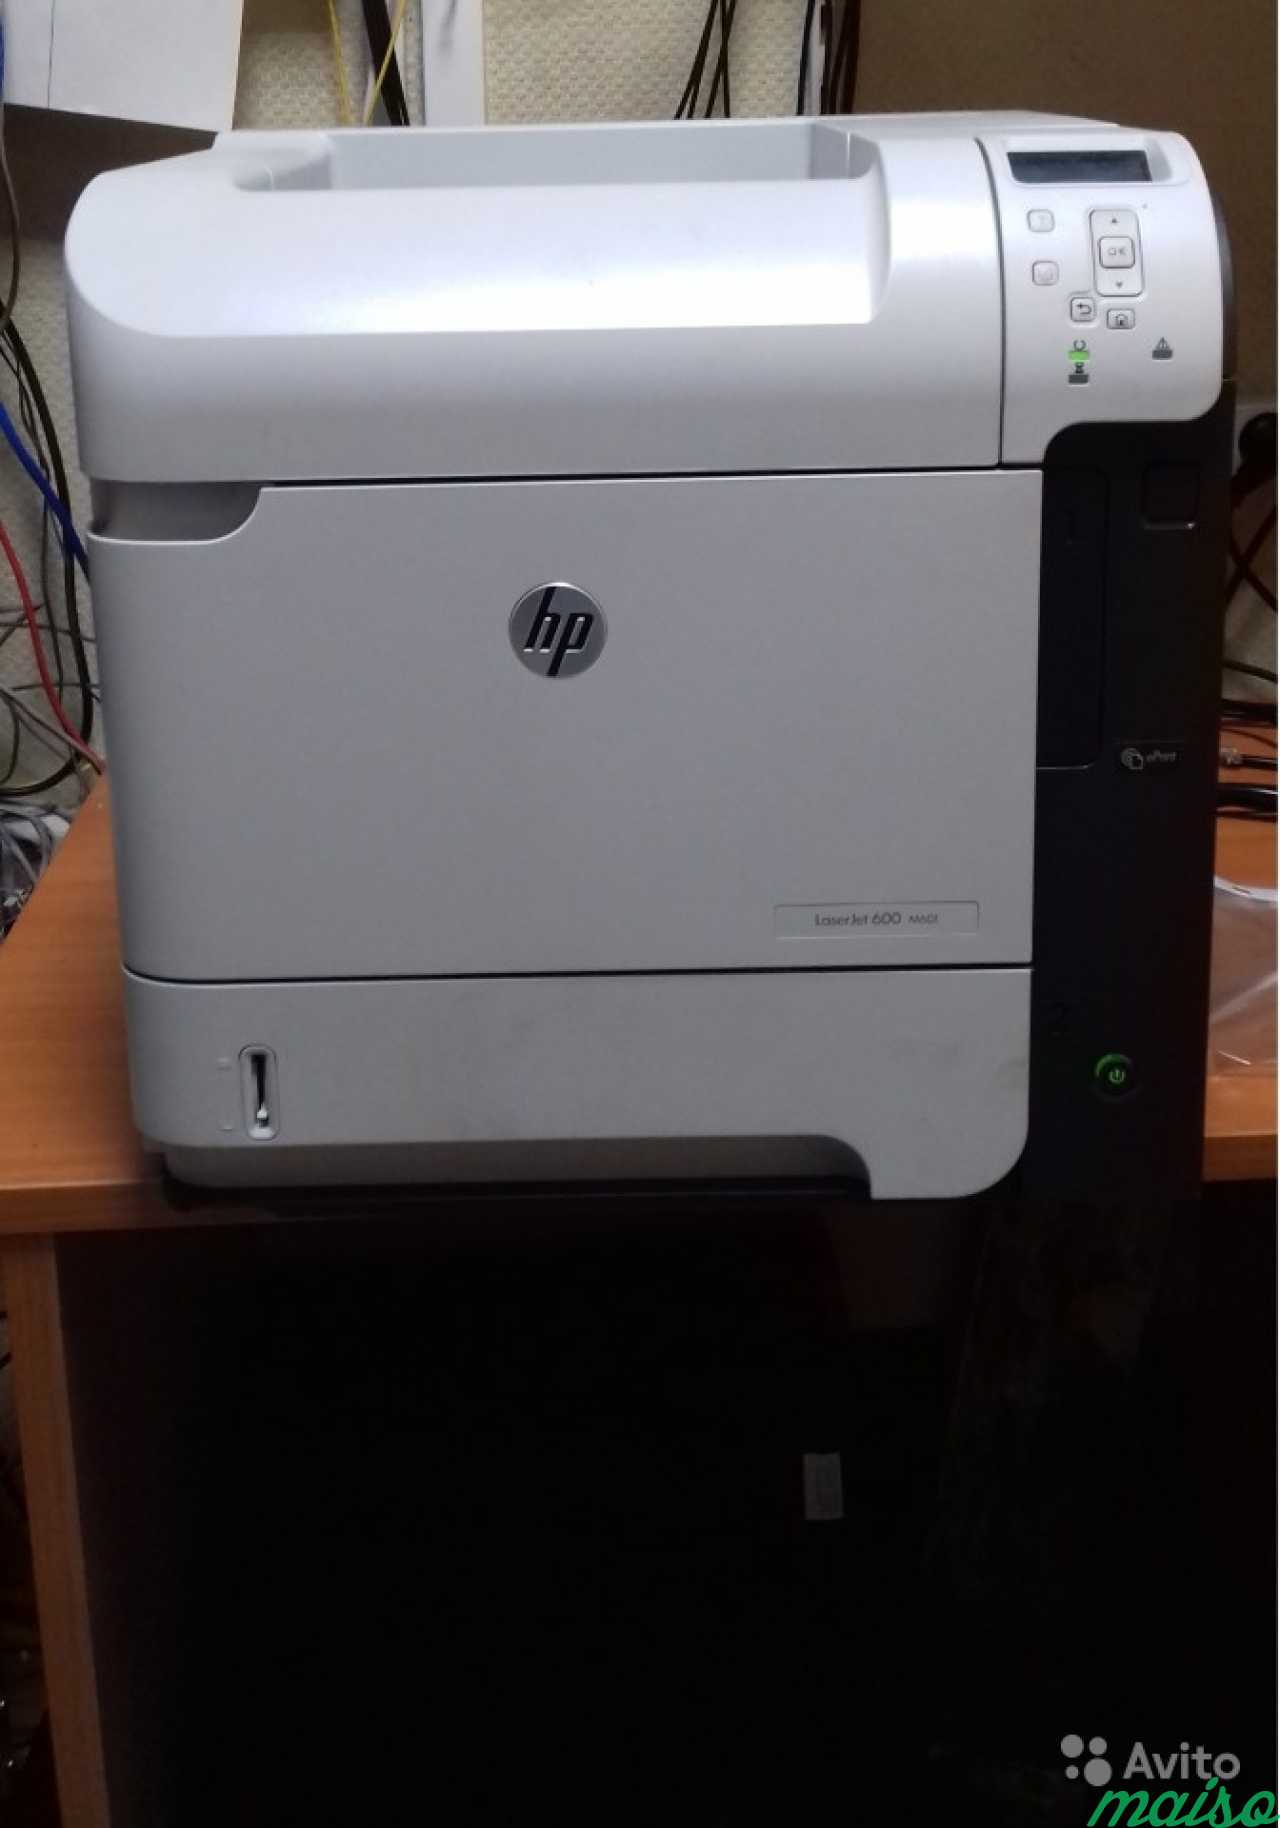 Принтер HP LaserJet 600 M601 в Санкт-Петербурге. Фото 2